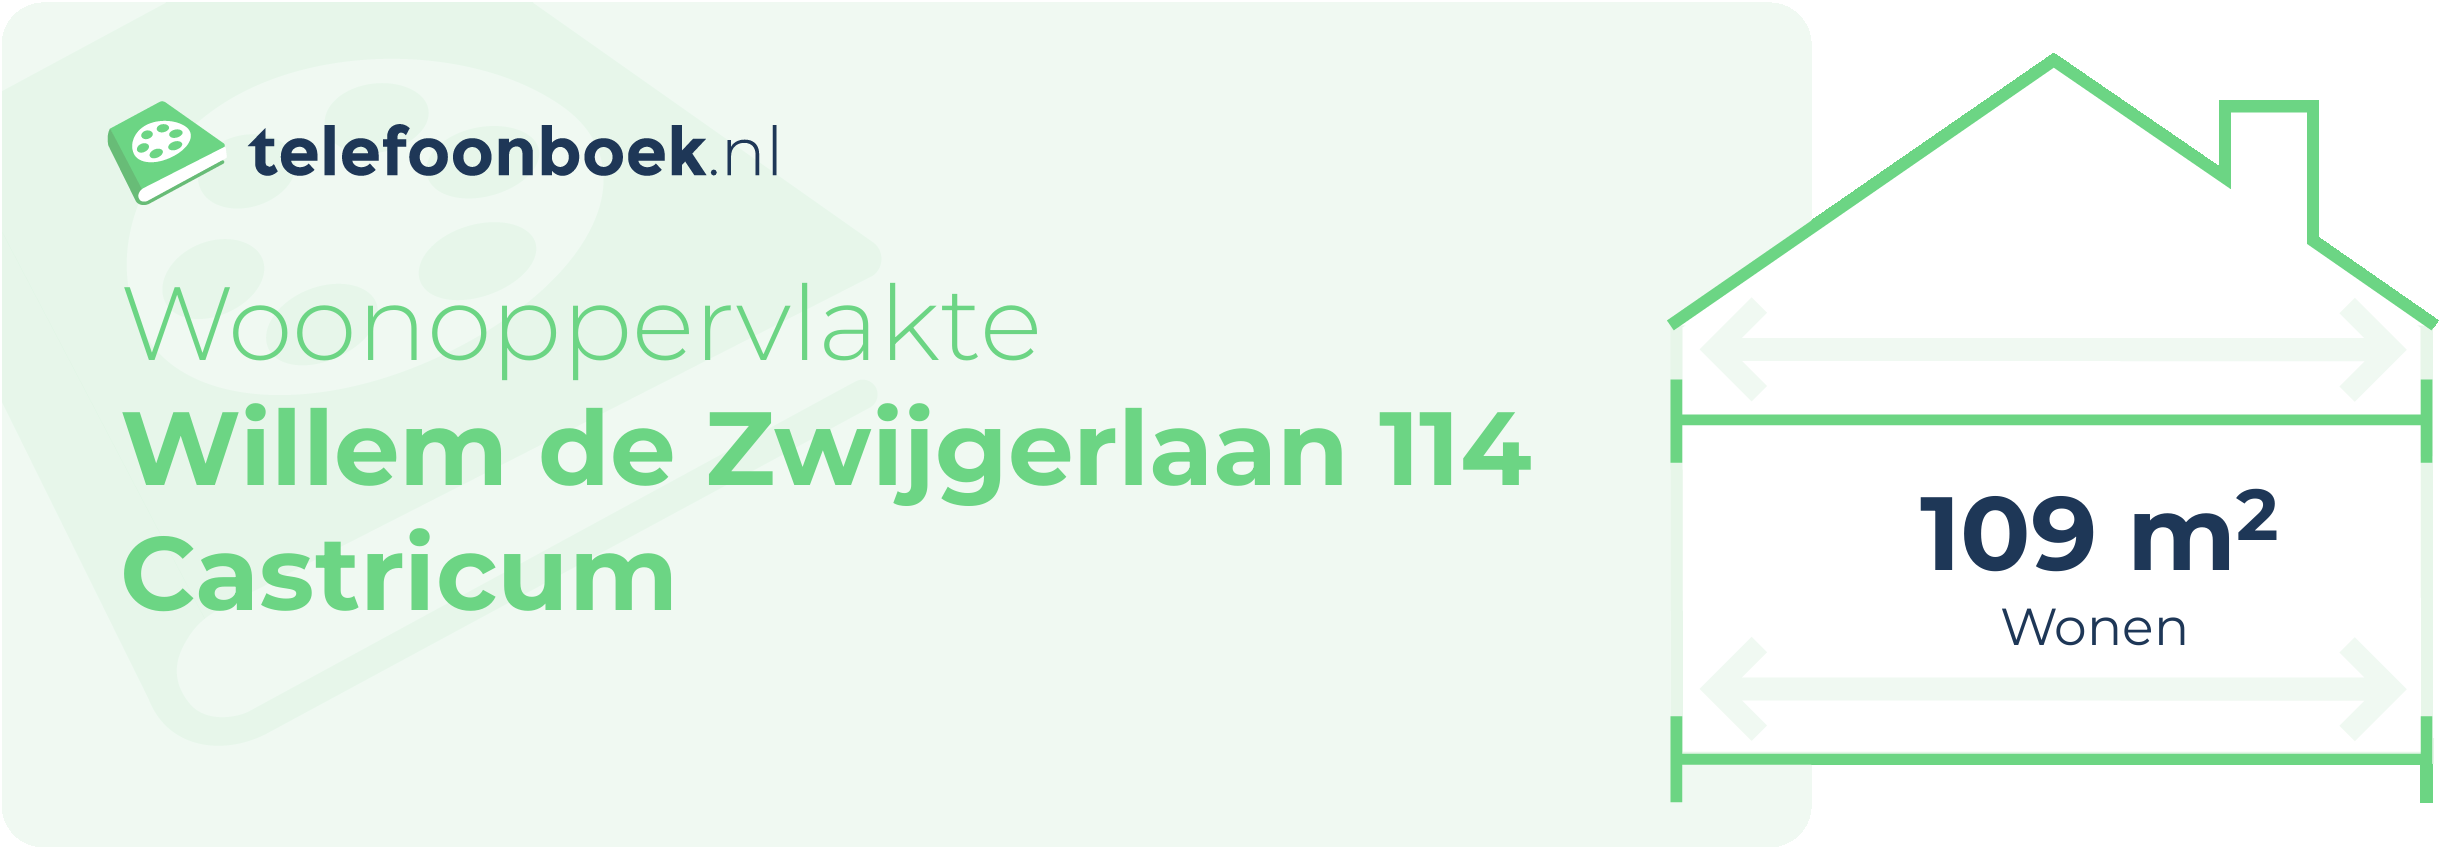 Woonoppervlakte Willem De Zwijgerlaan 114 Castricum